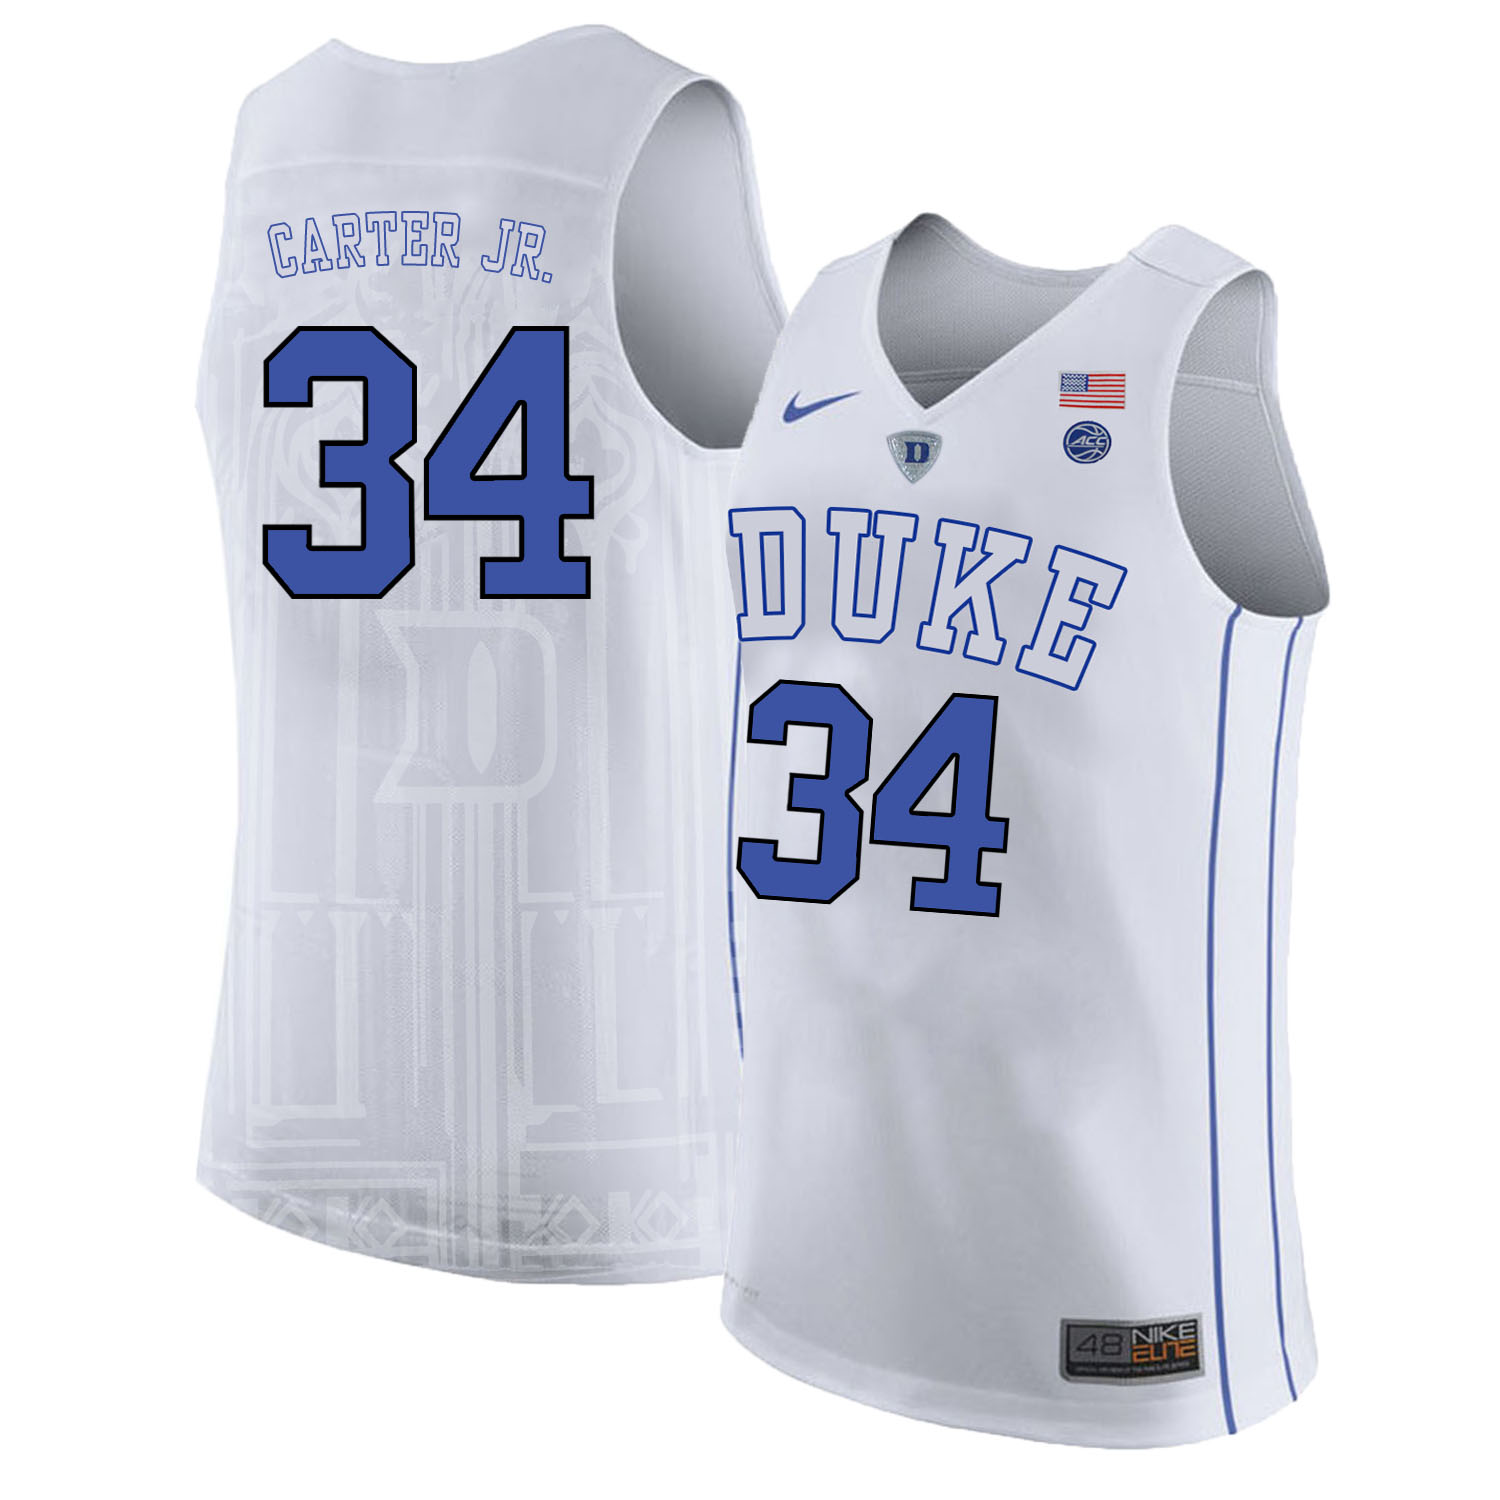 Duke Blue Devils 34 Wendell Carter Jr. White Nike College Basketball Jersey